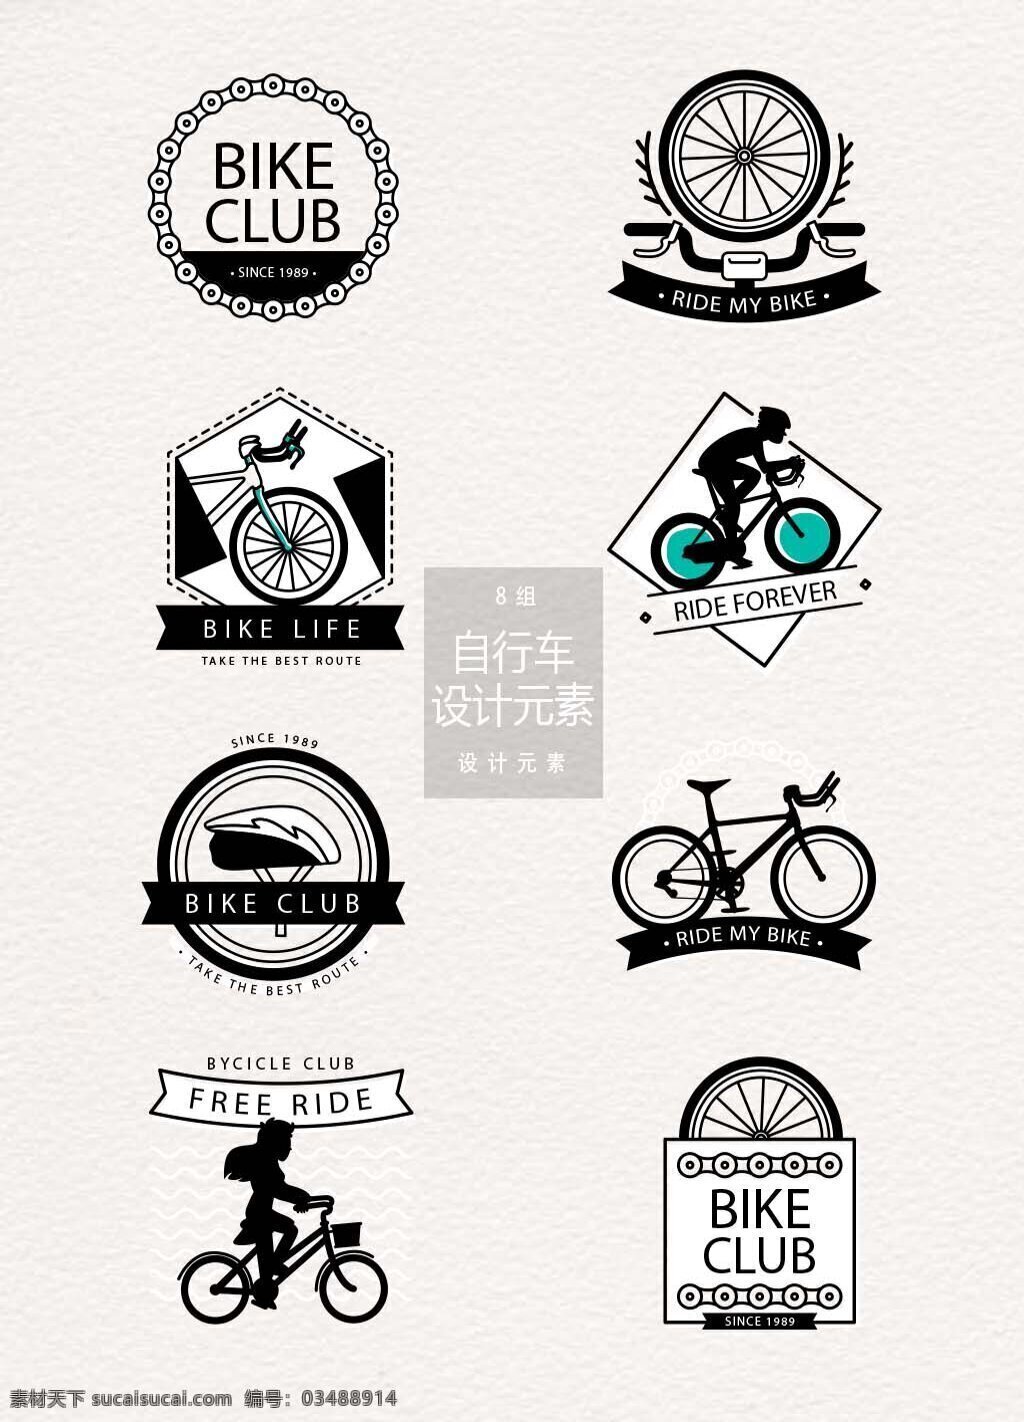 自行车 工会 标志设计 元素 设计元素 车轮 单车 汽车 自行车工会 自行车标志 自行车图标 logo